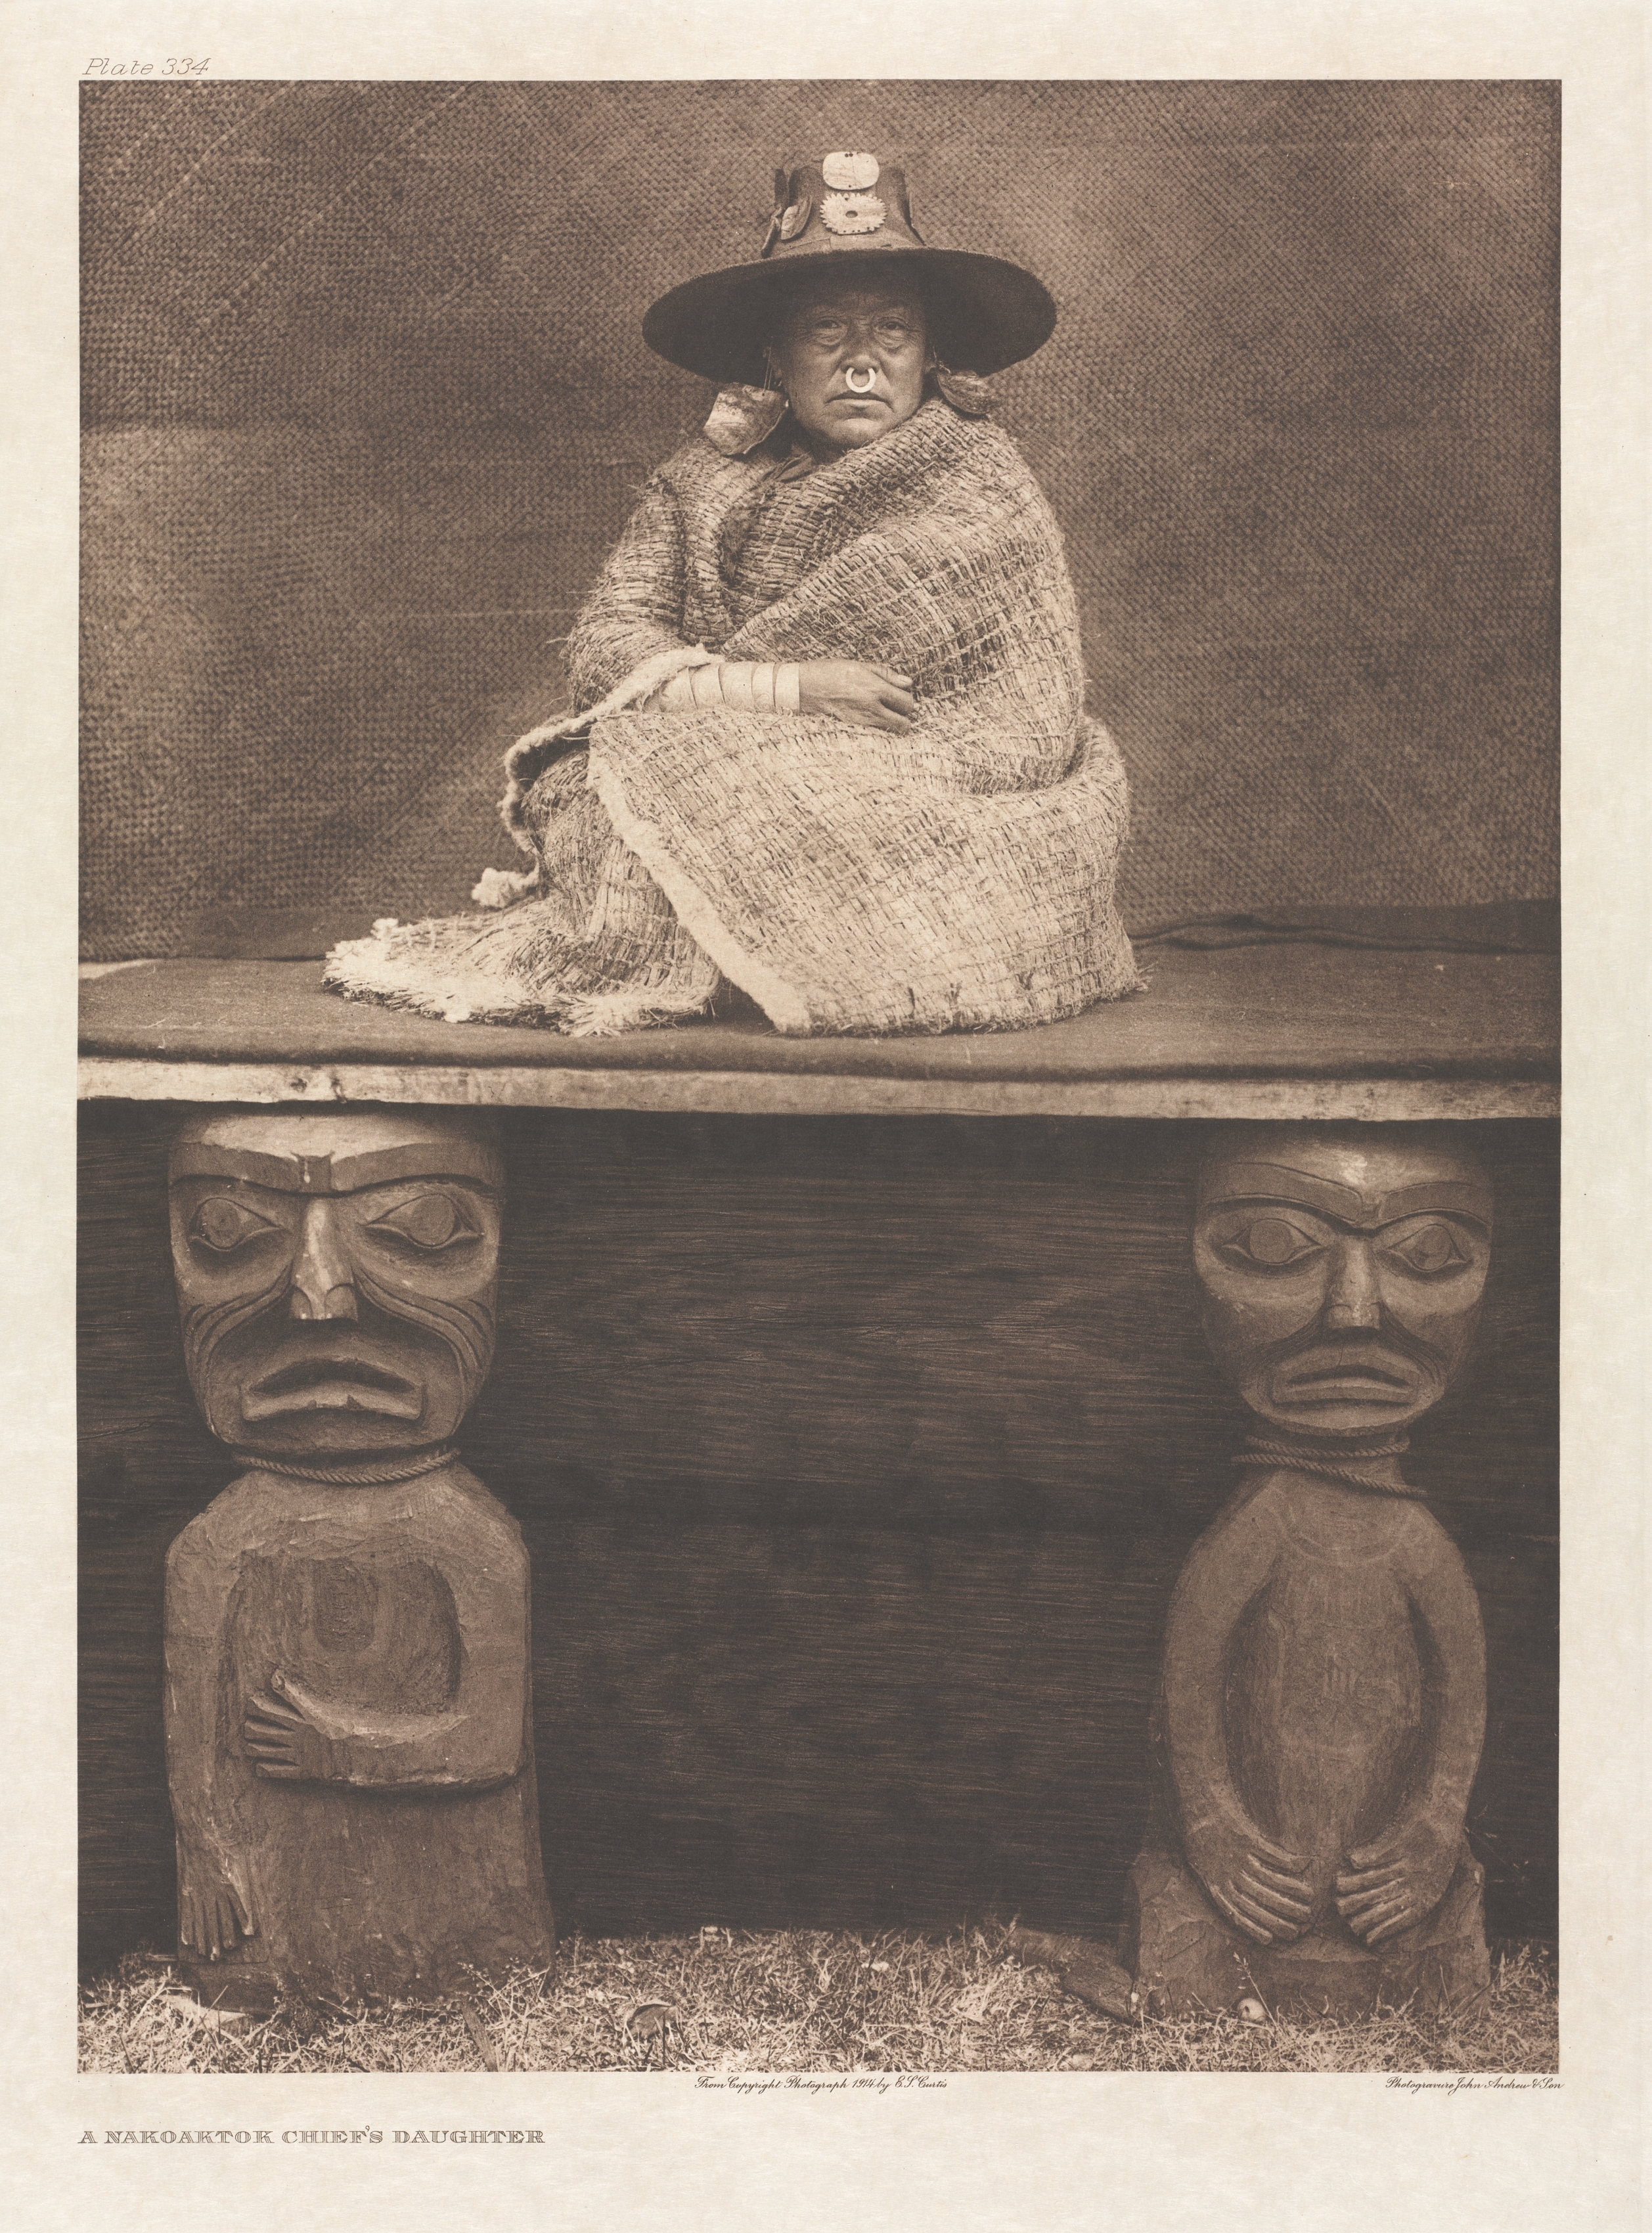 Portfolio X, Plate 334: A Nakoaktok Chief's Daughter